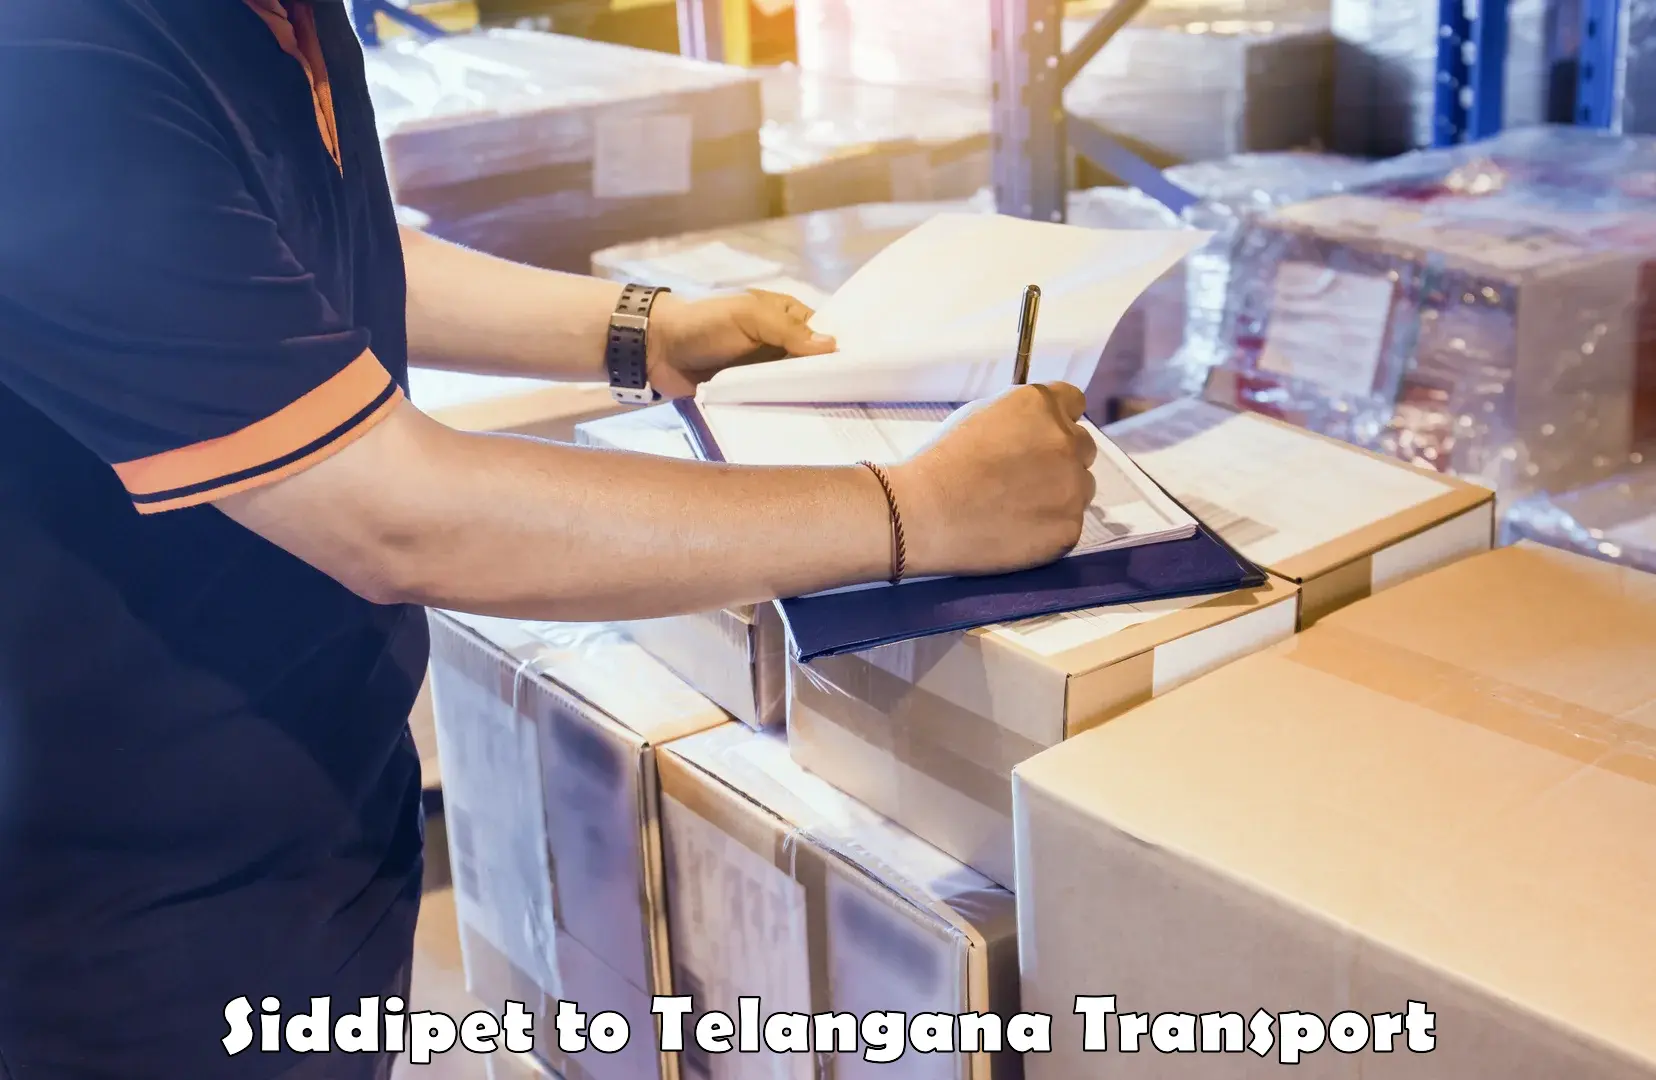 Online transport booking Siddipet to Gangadhara